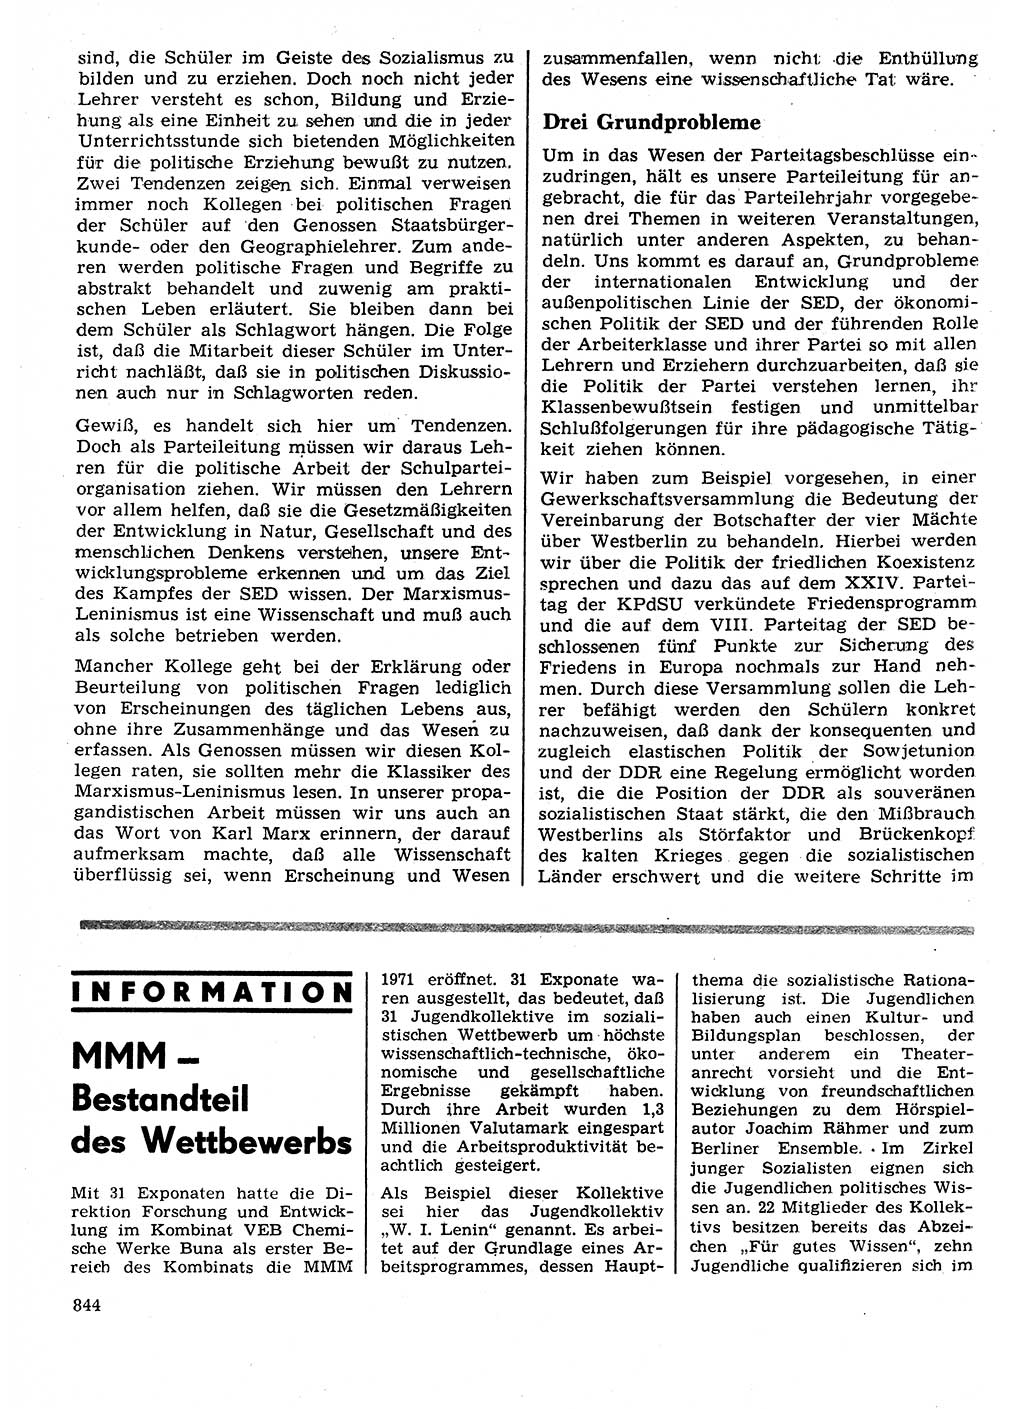 Neuer Weg (NW), Organ des Zentralkomitees (ZK) der SED (Sozialistische Einheitspartei Deutschlands) für Fragen des Parteilebens, 26. Jahrgang [Deutsche Demokratische Republik (DDR)] 1971, Seite 844 (NW ZK SED DDR 1971, S. 844)